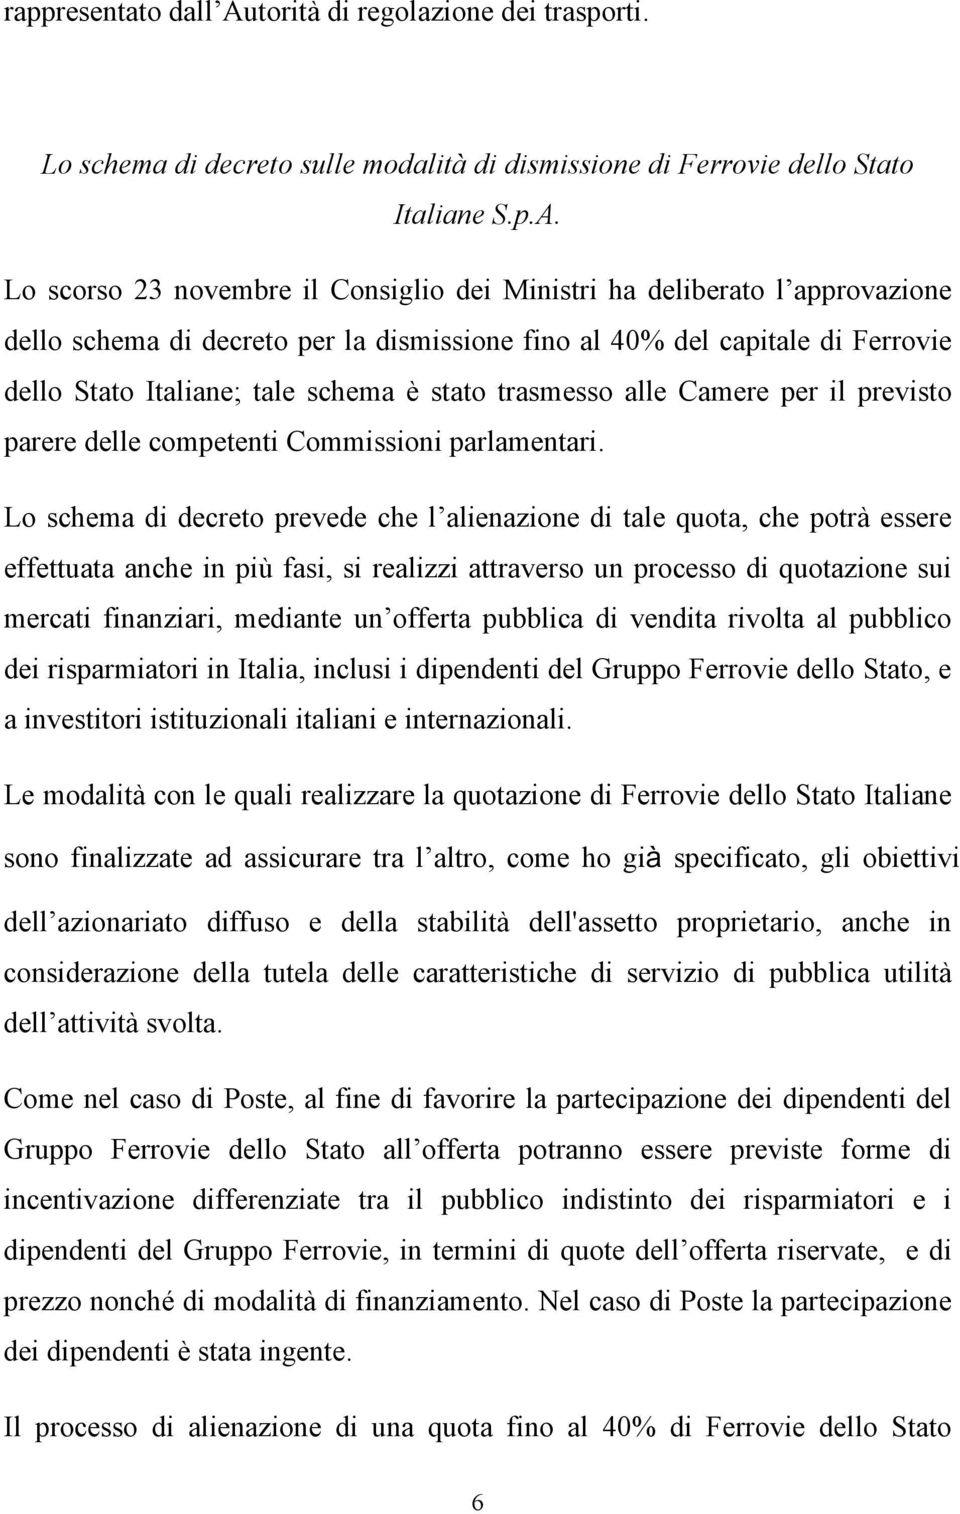 Lo scorso 23 novembre il Consiglio dei Ministri ha deliberato l approvazione dello schema di decreto per la dismissione fino al 40% del capitale di Ferrovie dello Stato Italiane; tale schema è stato